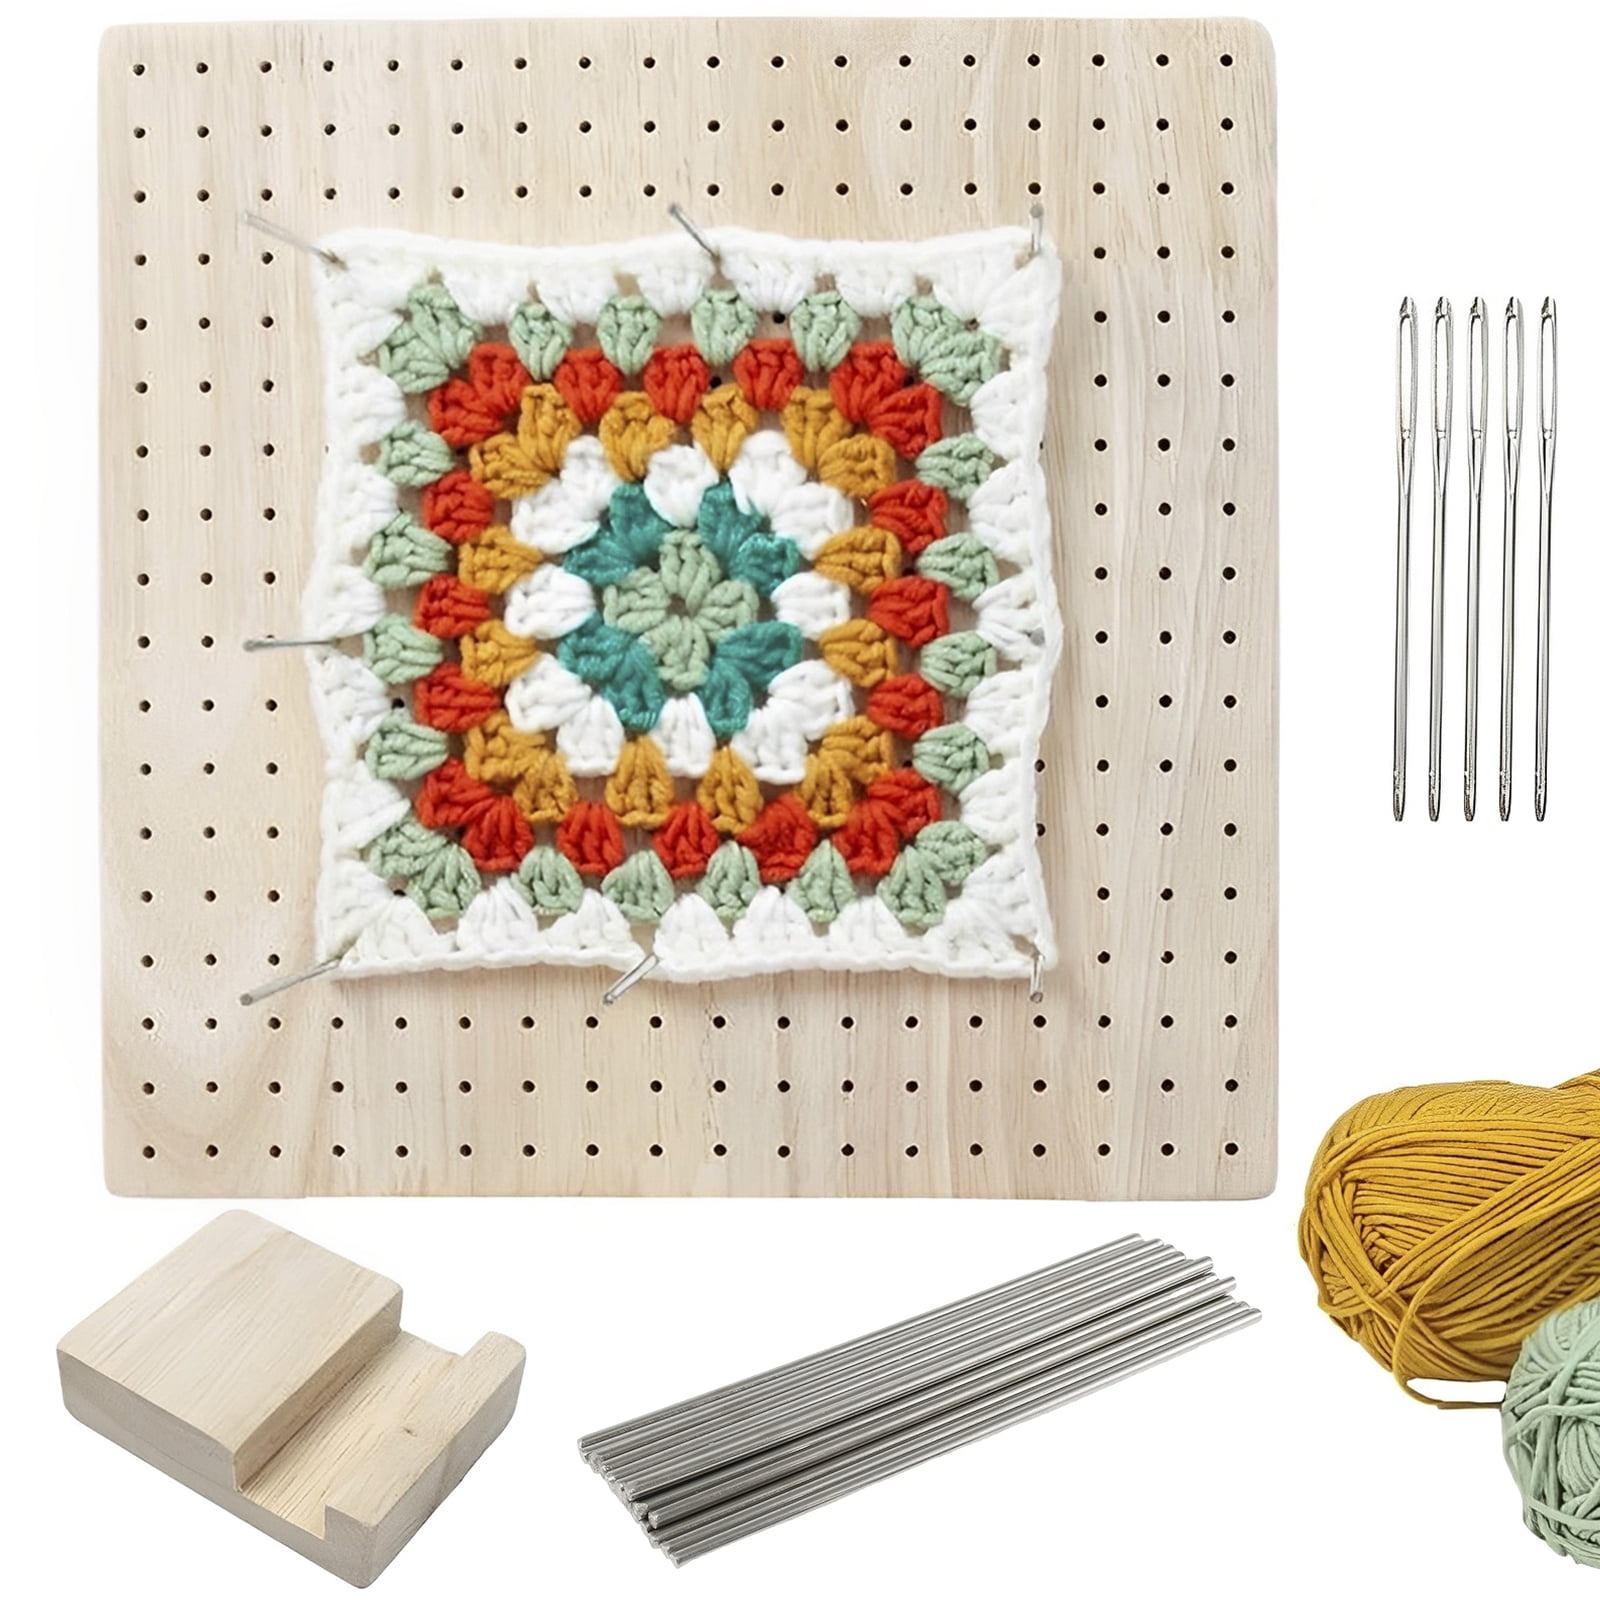 Wooden Crochet Blocking Board, Crochet Tools, Knitting Mats, Crochet Kit